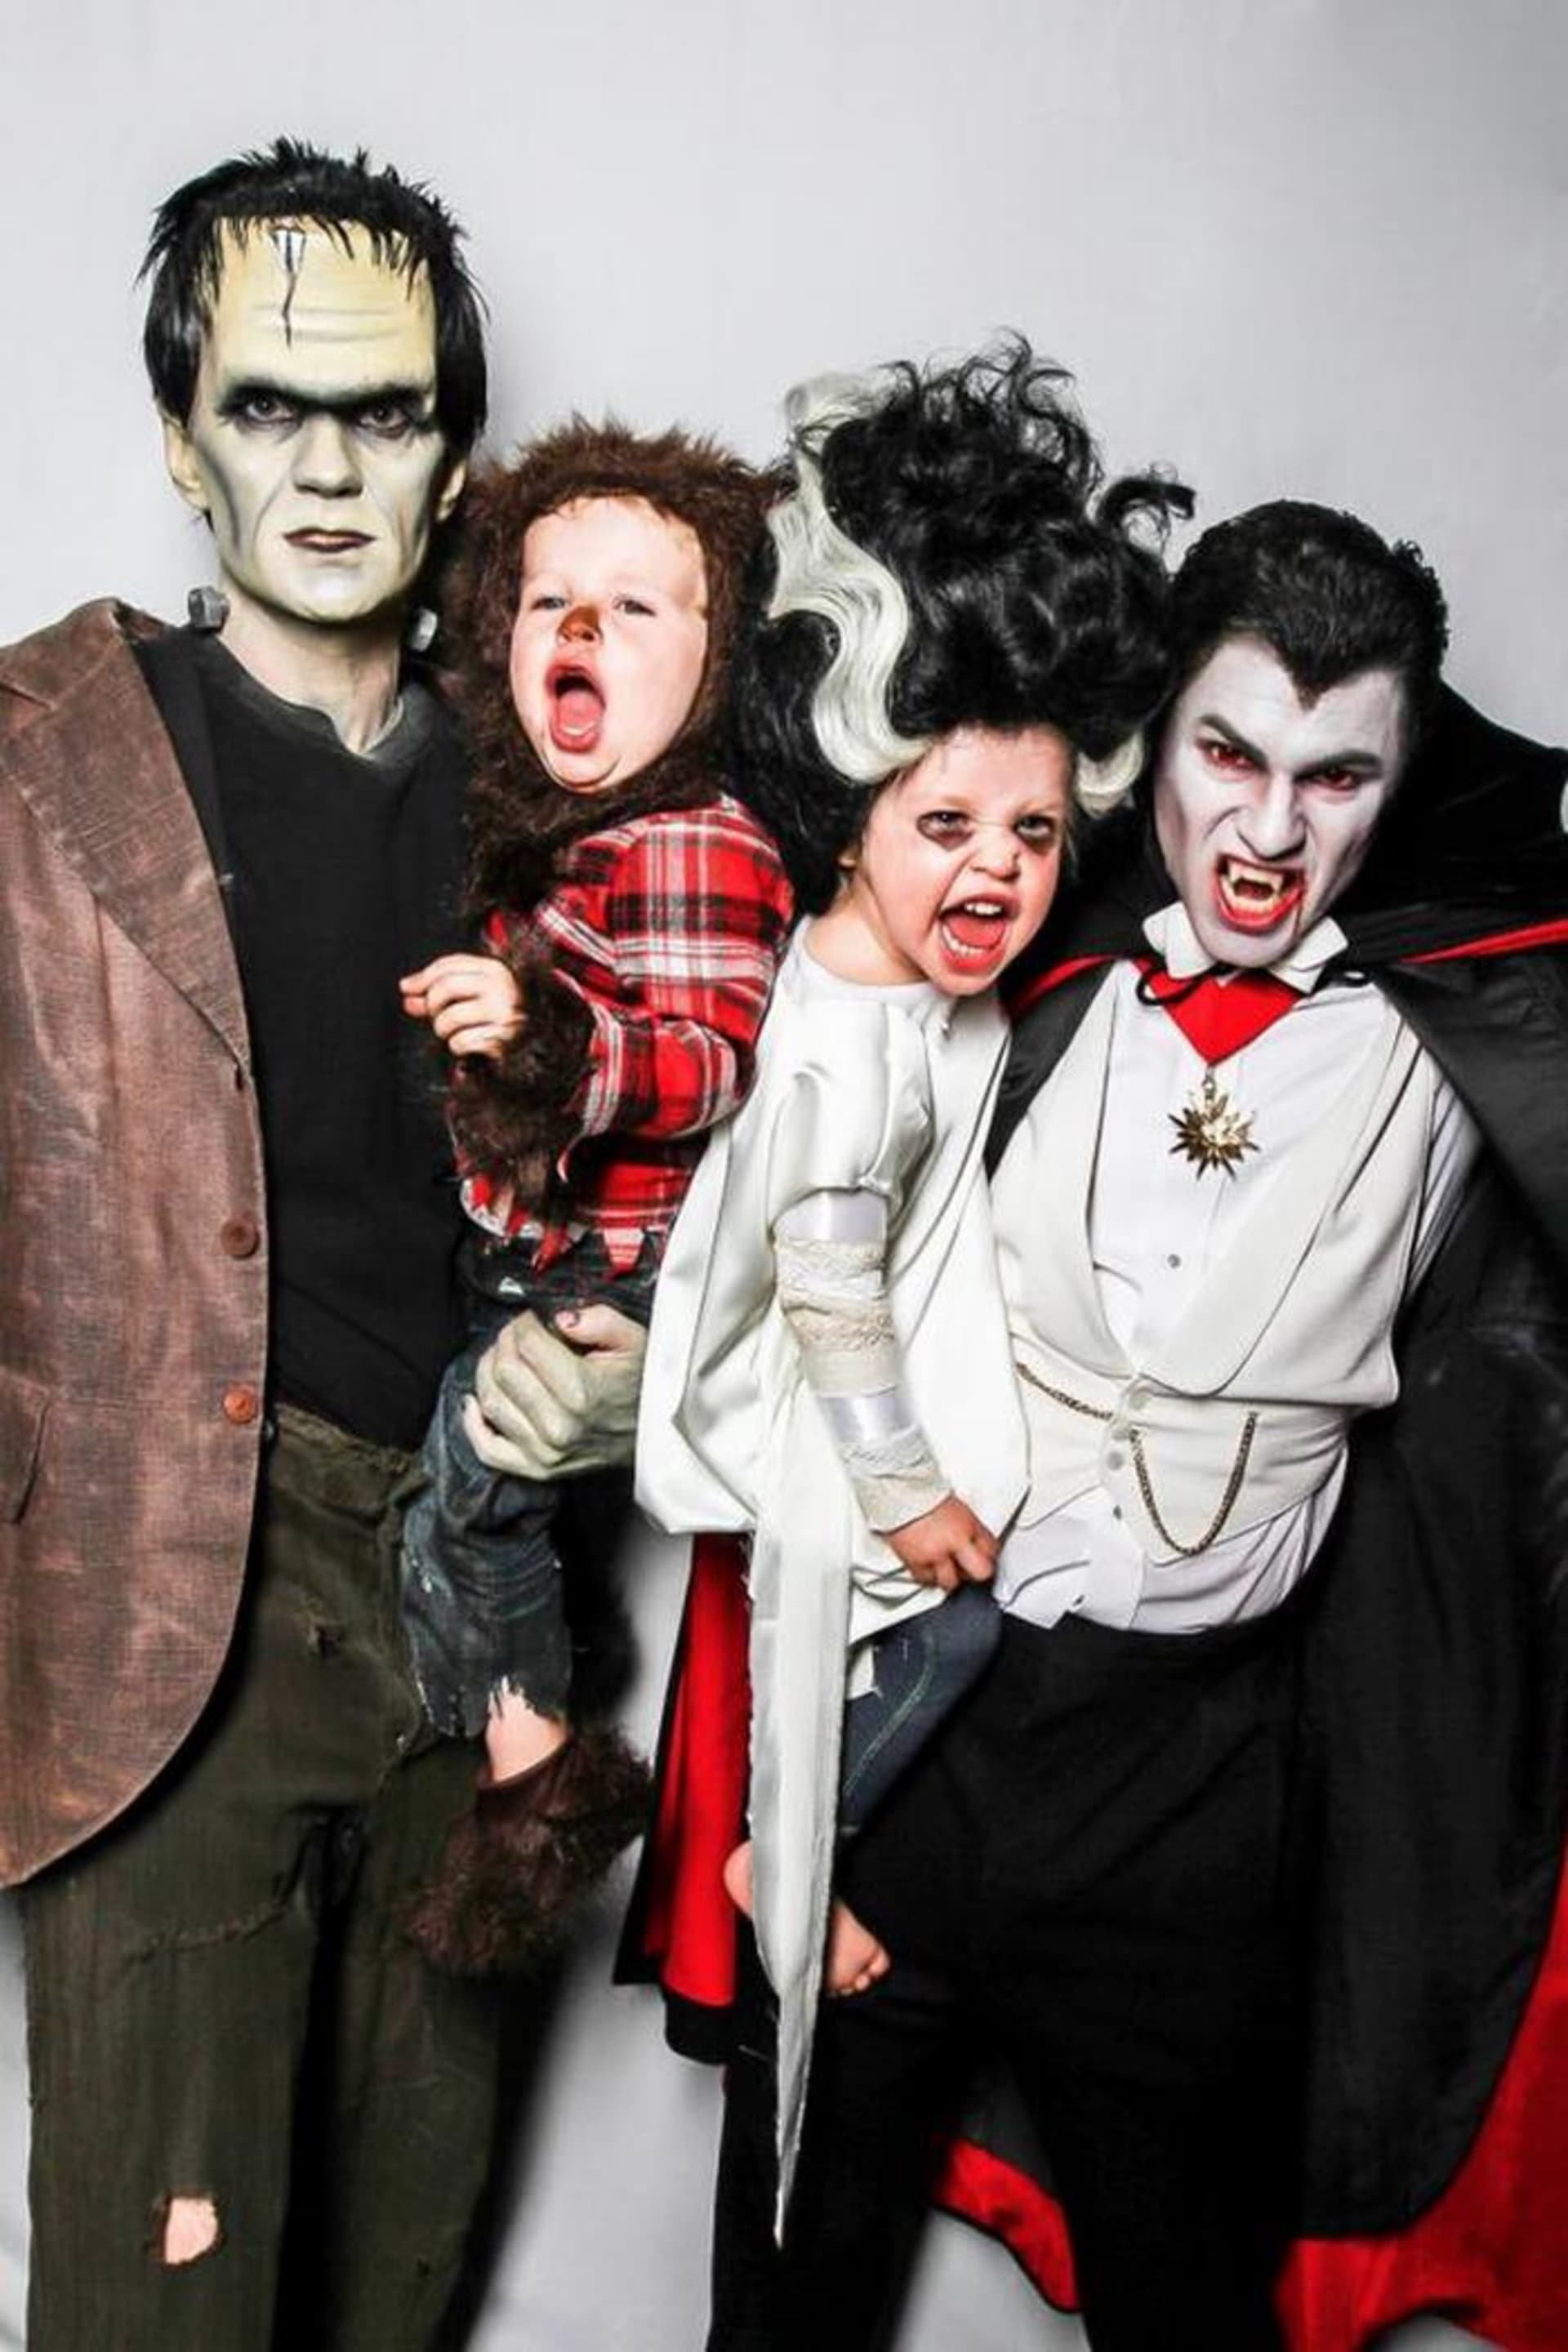 Frankensteinova rodina v roce 2013